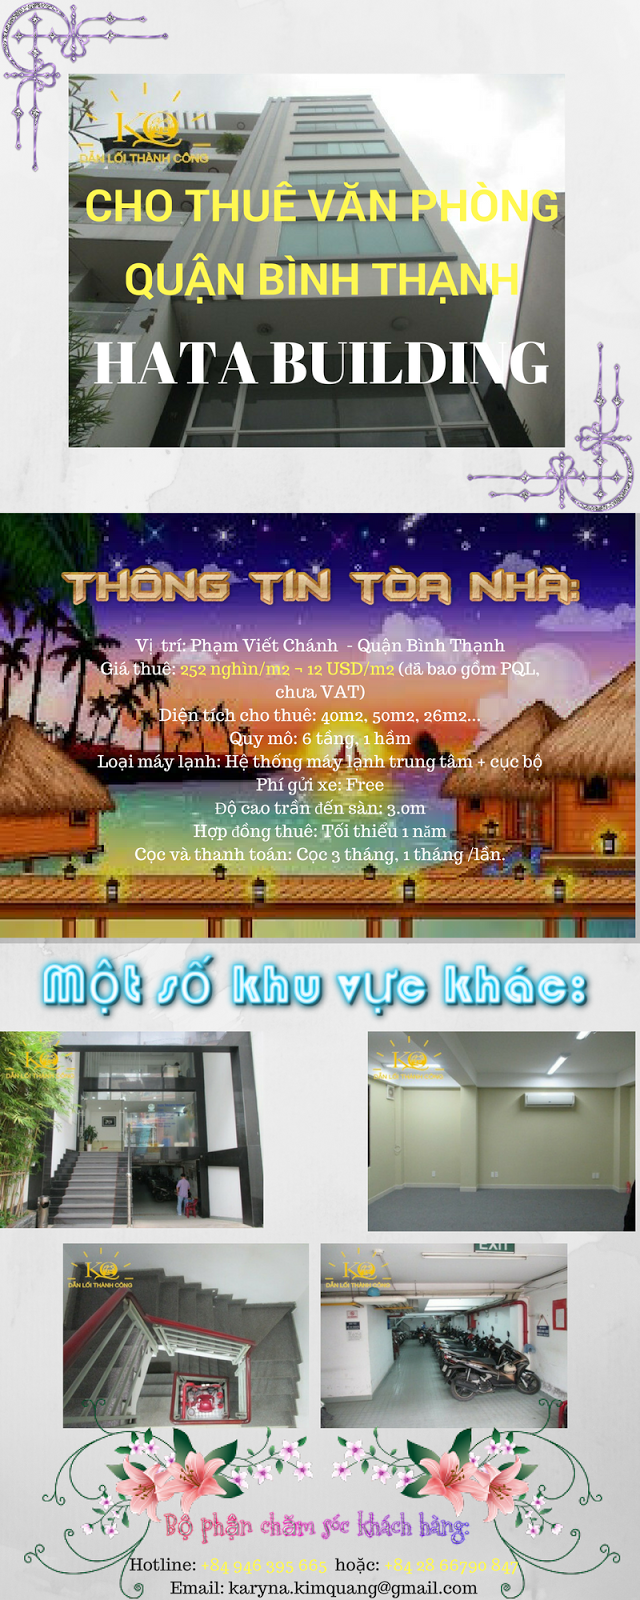 Cho thuê văn phòng quận Bình Thạnh Hata building 